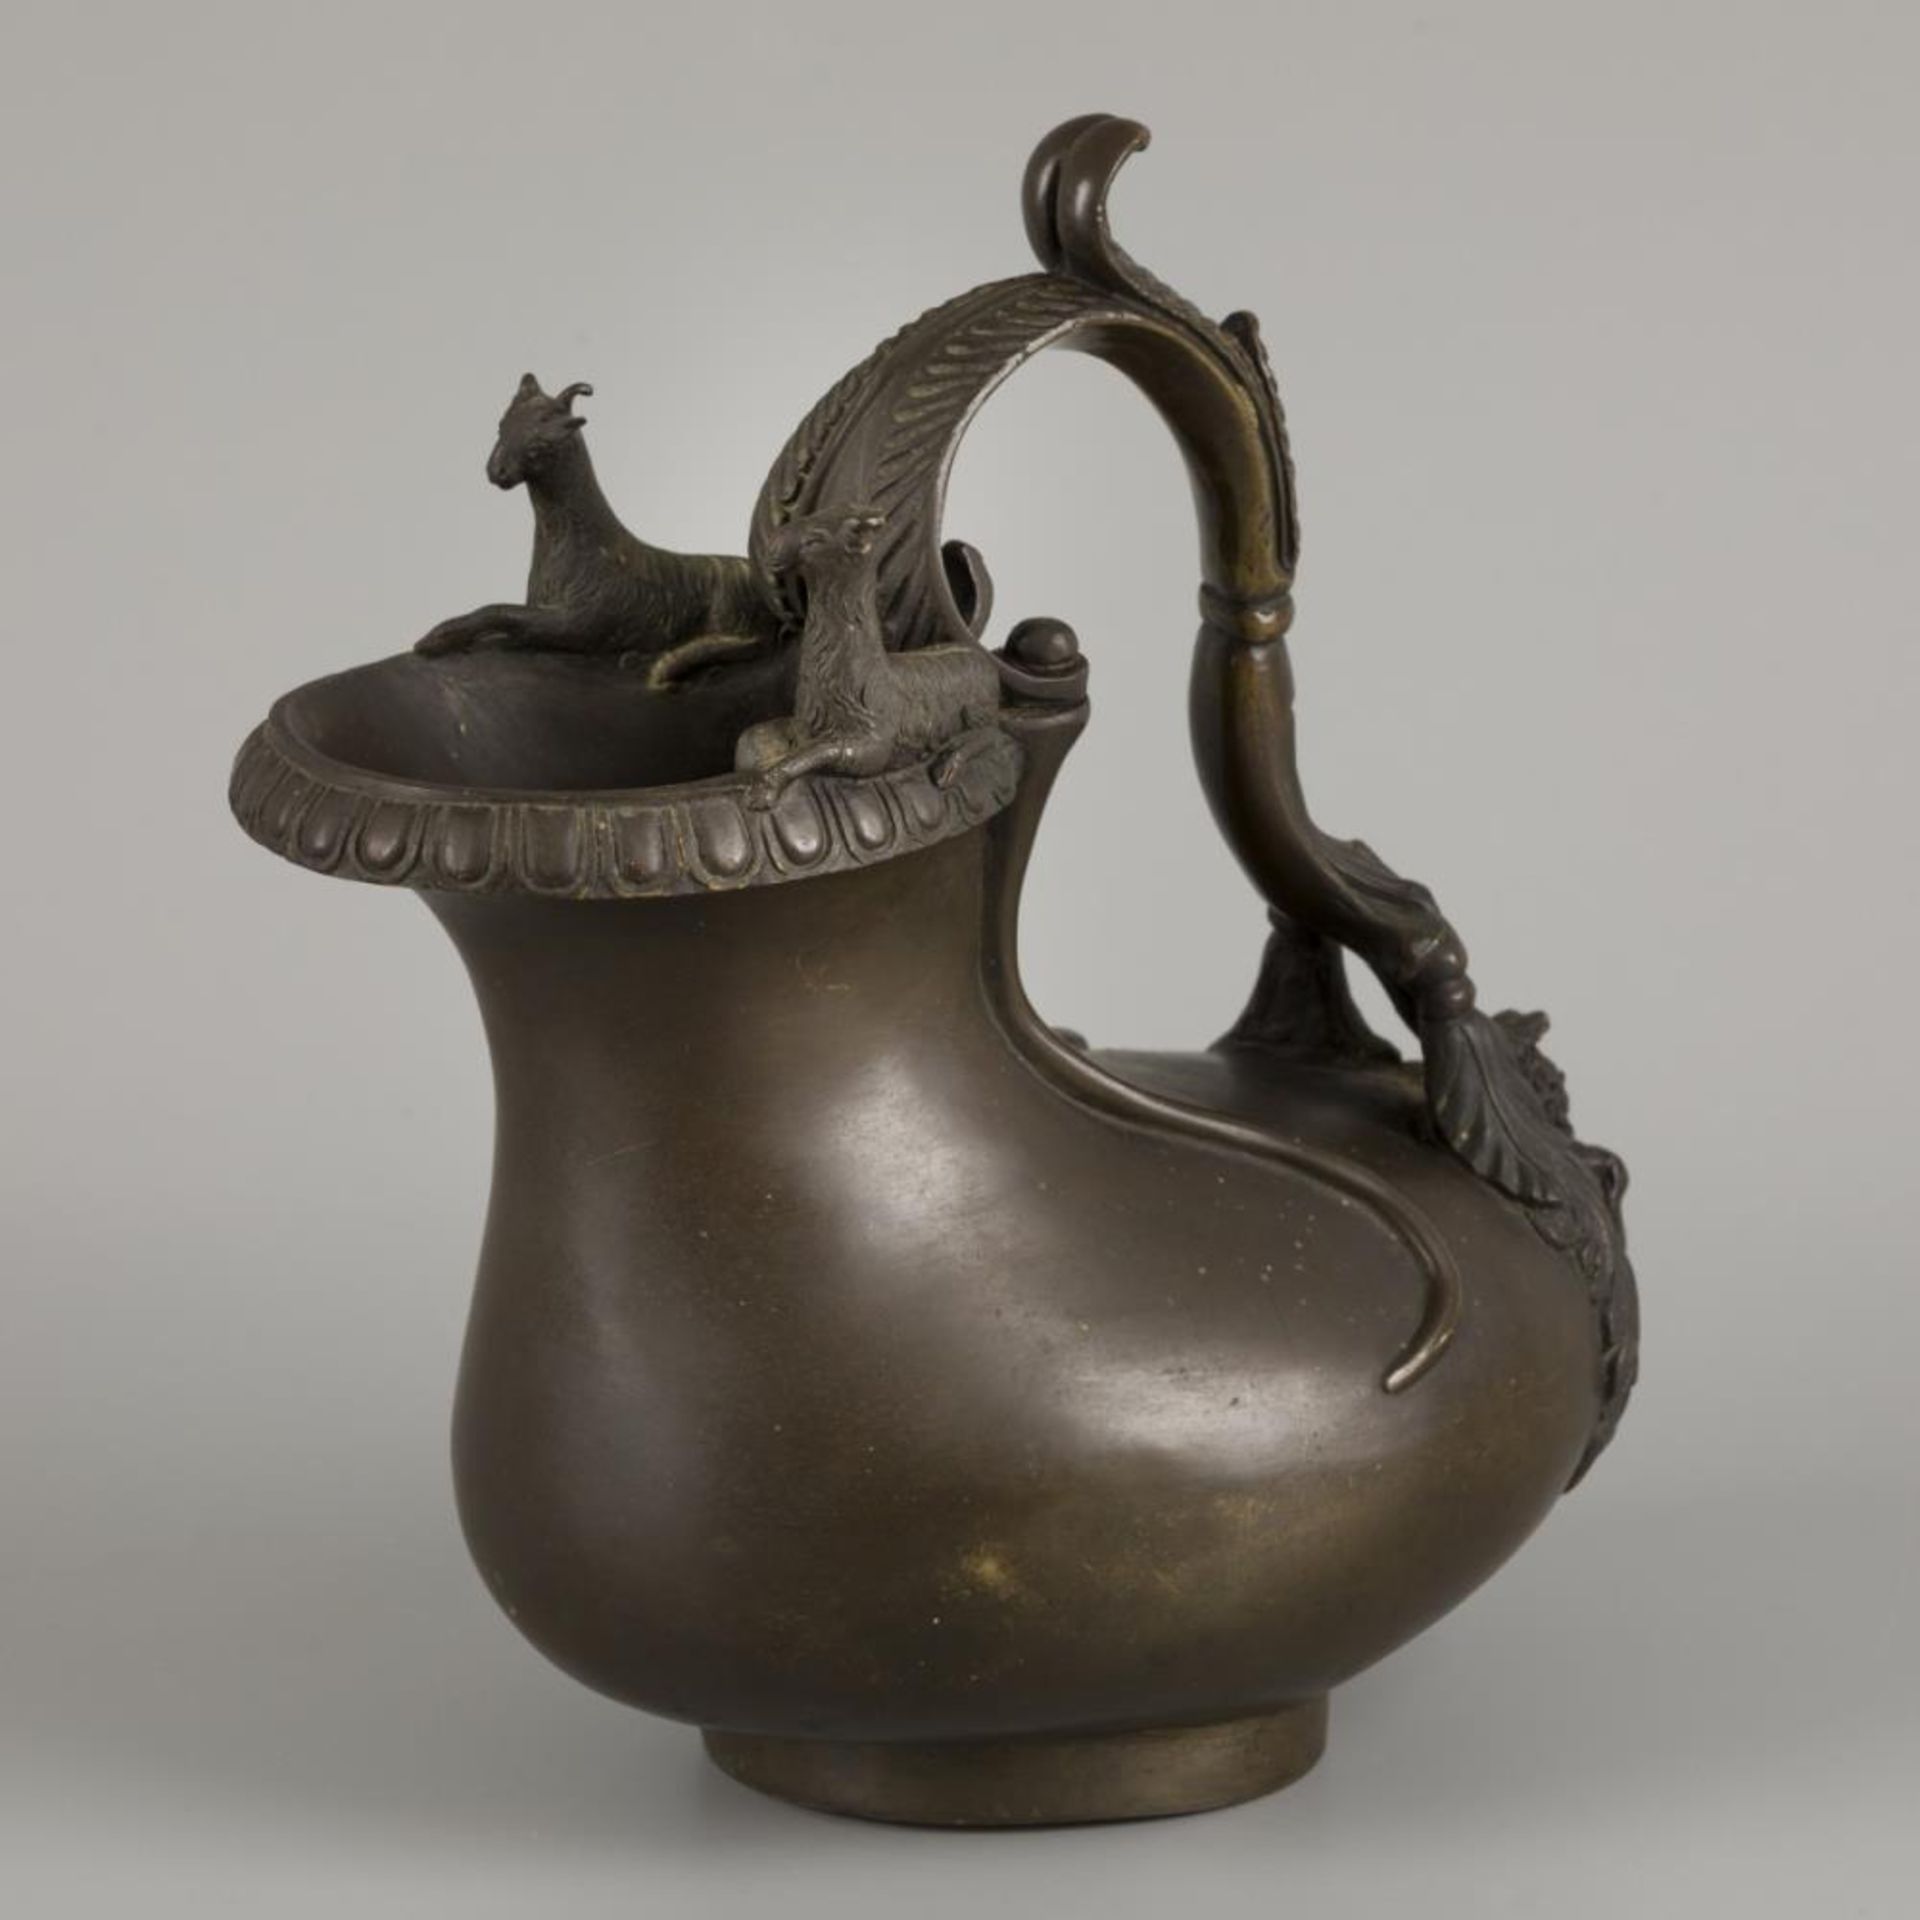 A Grand Tour souvenir bronze Askos jug, after earlier Roman example, Italy, ca. 1860.